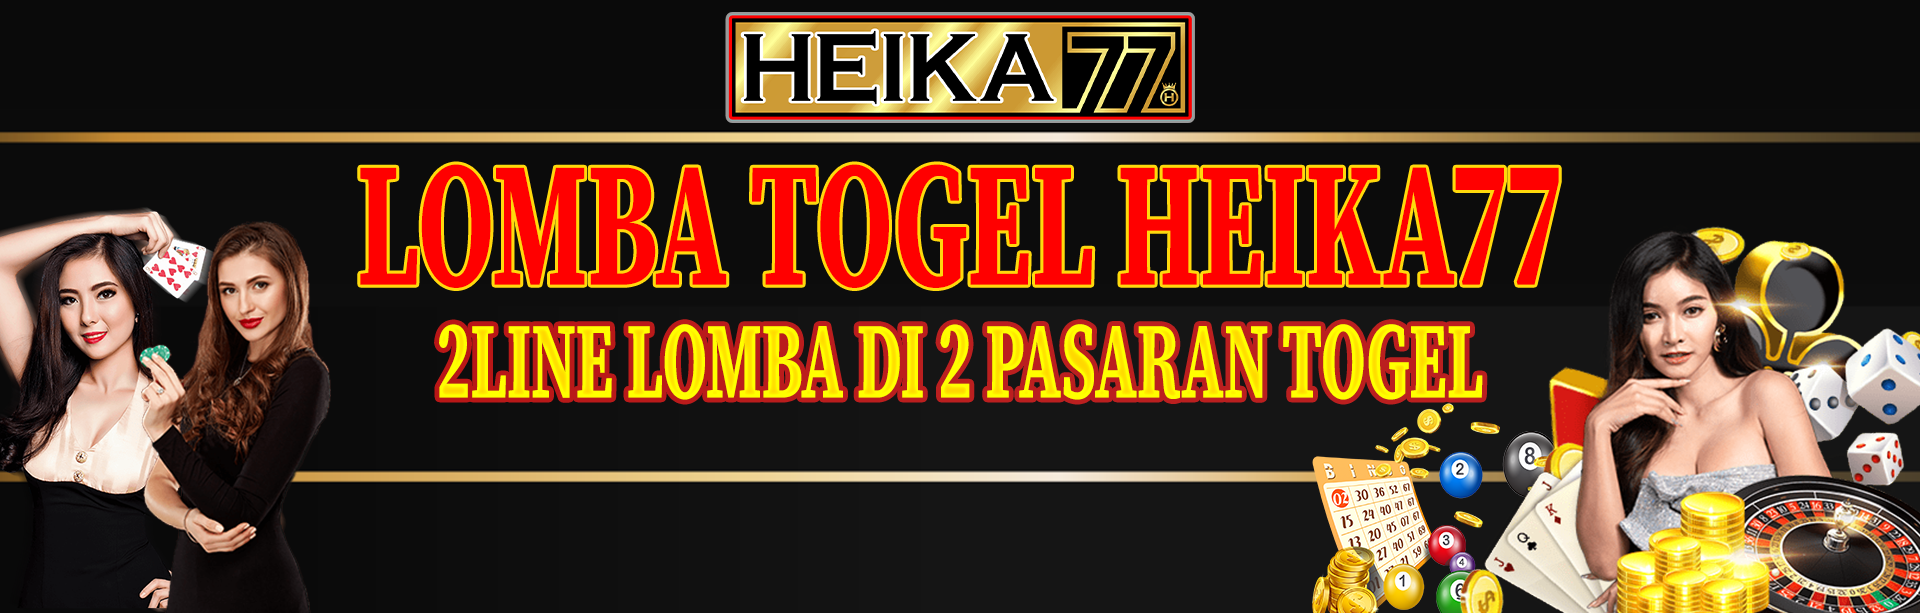 LOMBA TOGEL HEIKA77 2D 2LINE LOMBA DI 2 PASARAN TOGEL